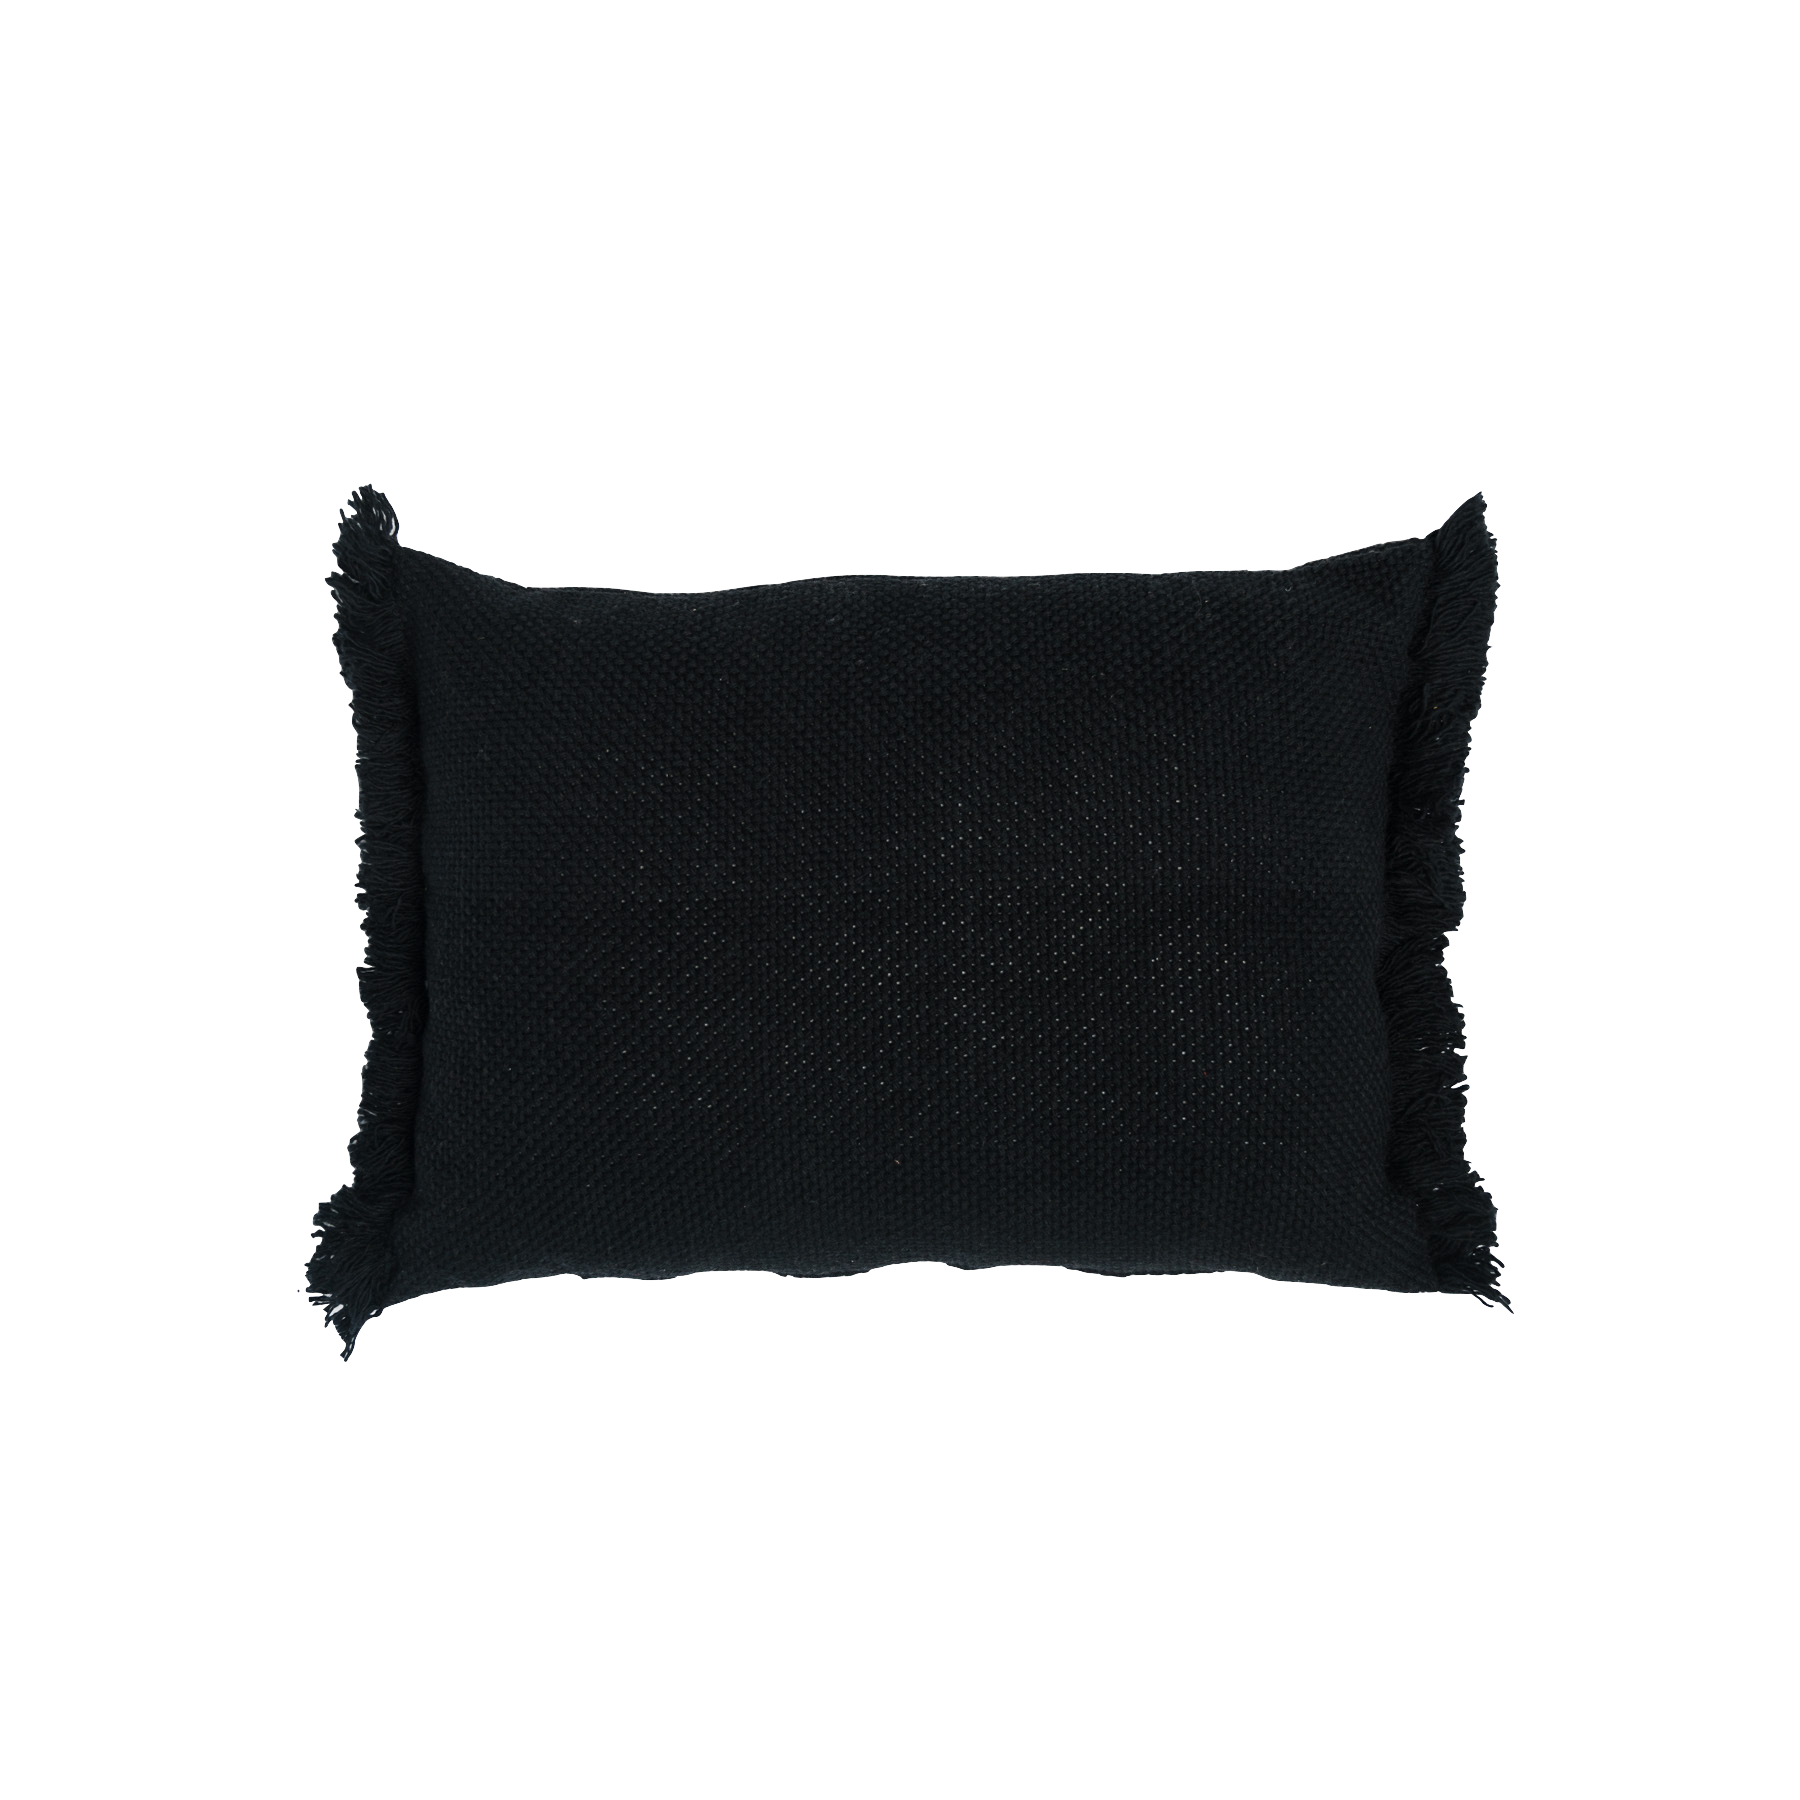 Small black lumbar pillow